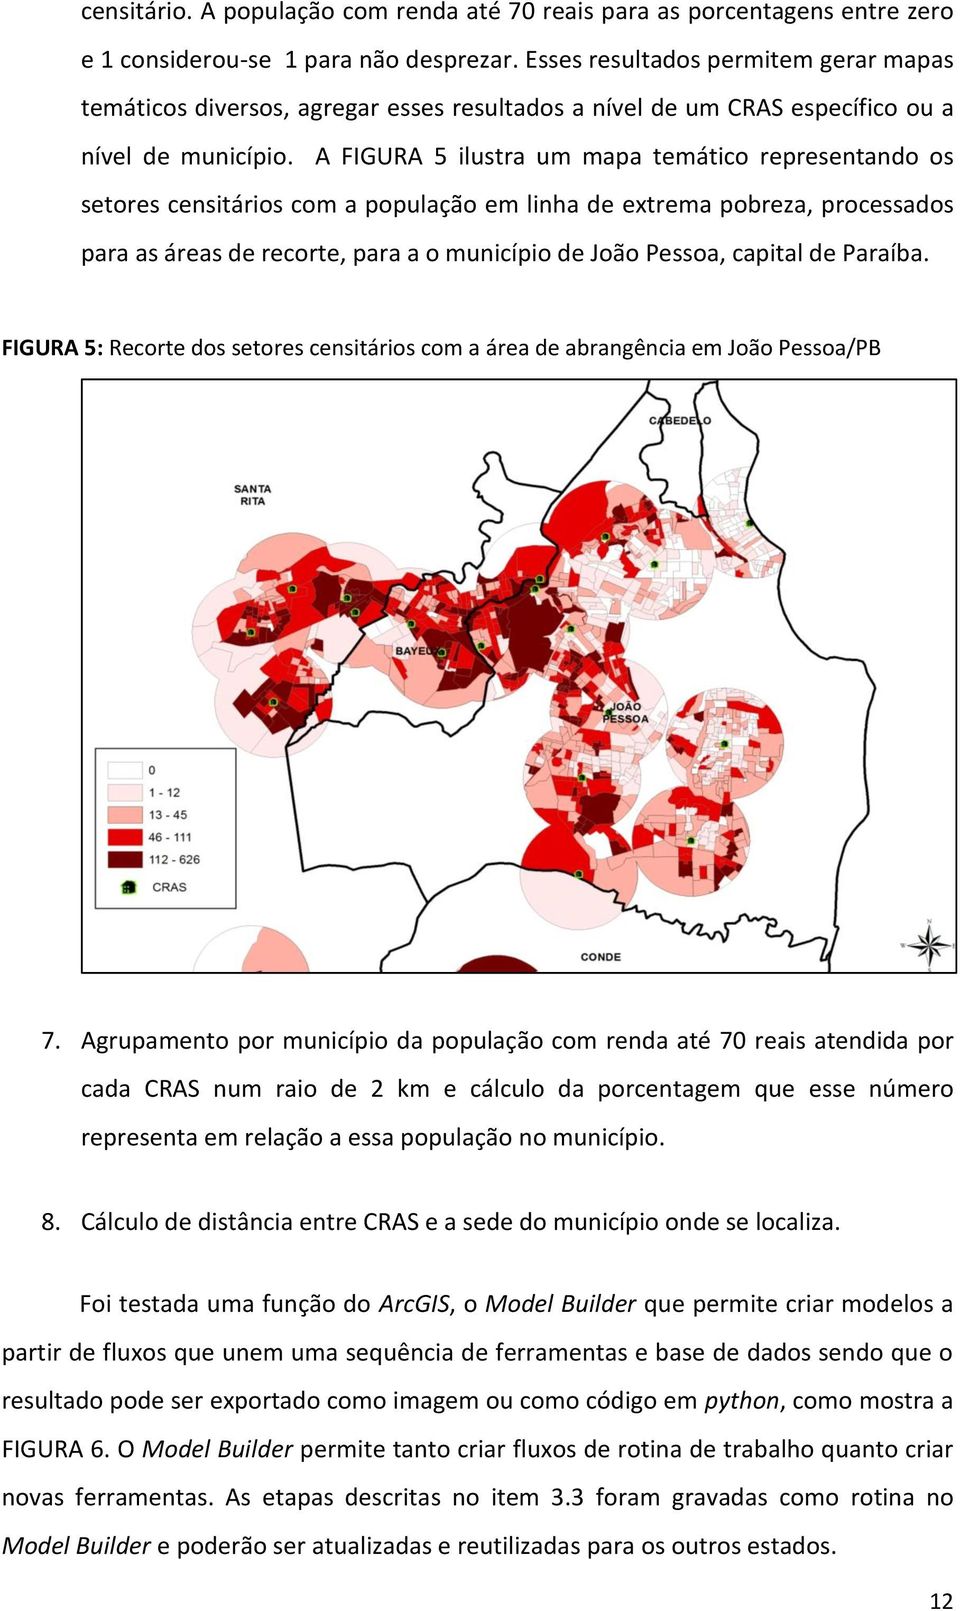 A FIGURA 5 ilustra um mapa temático representando os setores censitários com a população em linha de extrema pobreza, processados para as áreas de recorte, para a o município de João Pessoa, capital